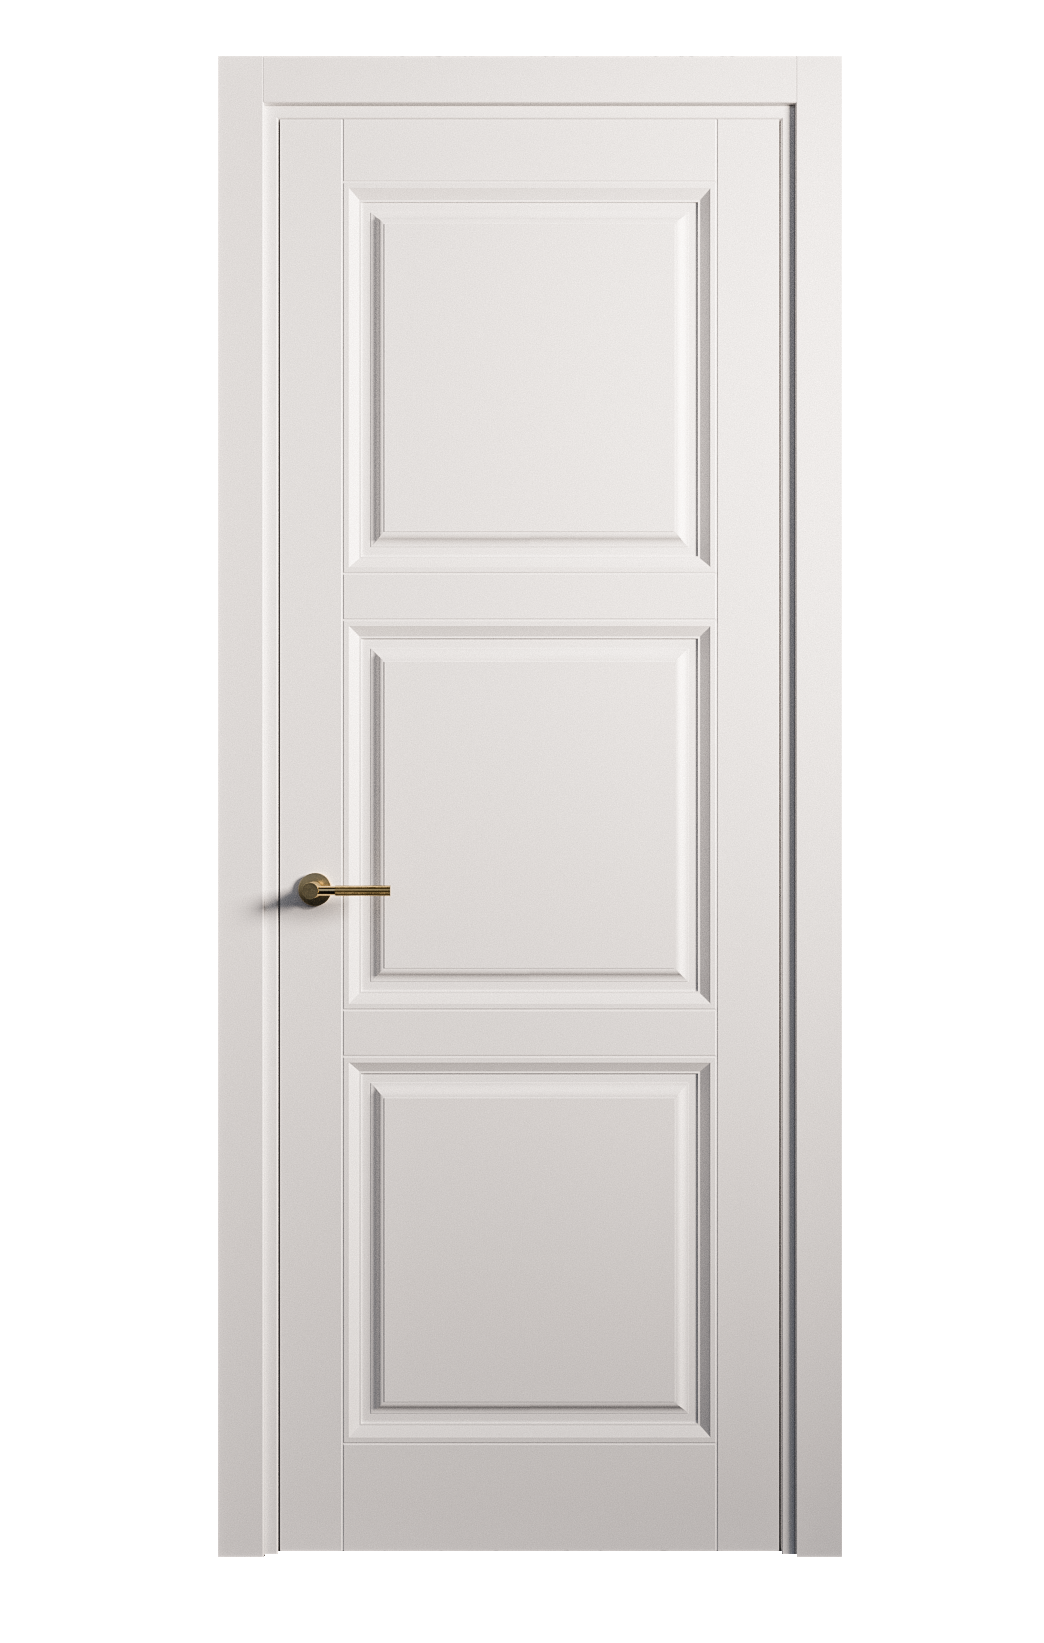 Межкомнатная дверь Venezia-3 глухая эмаль ral 9003 25731